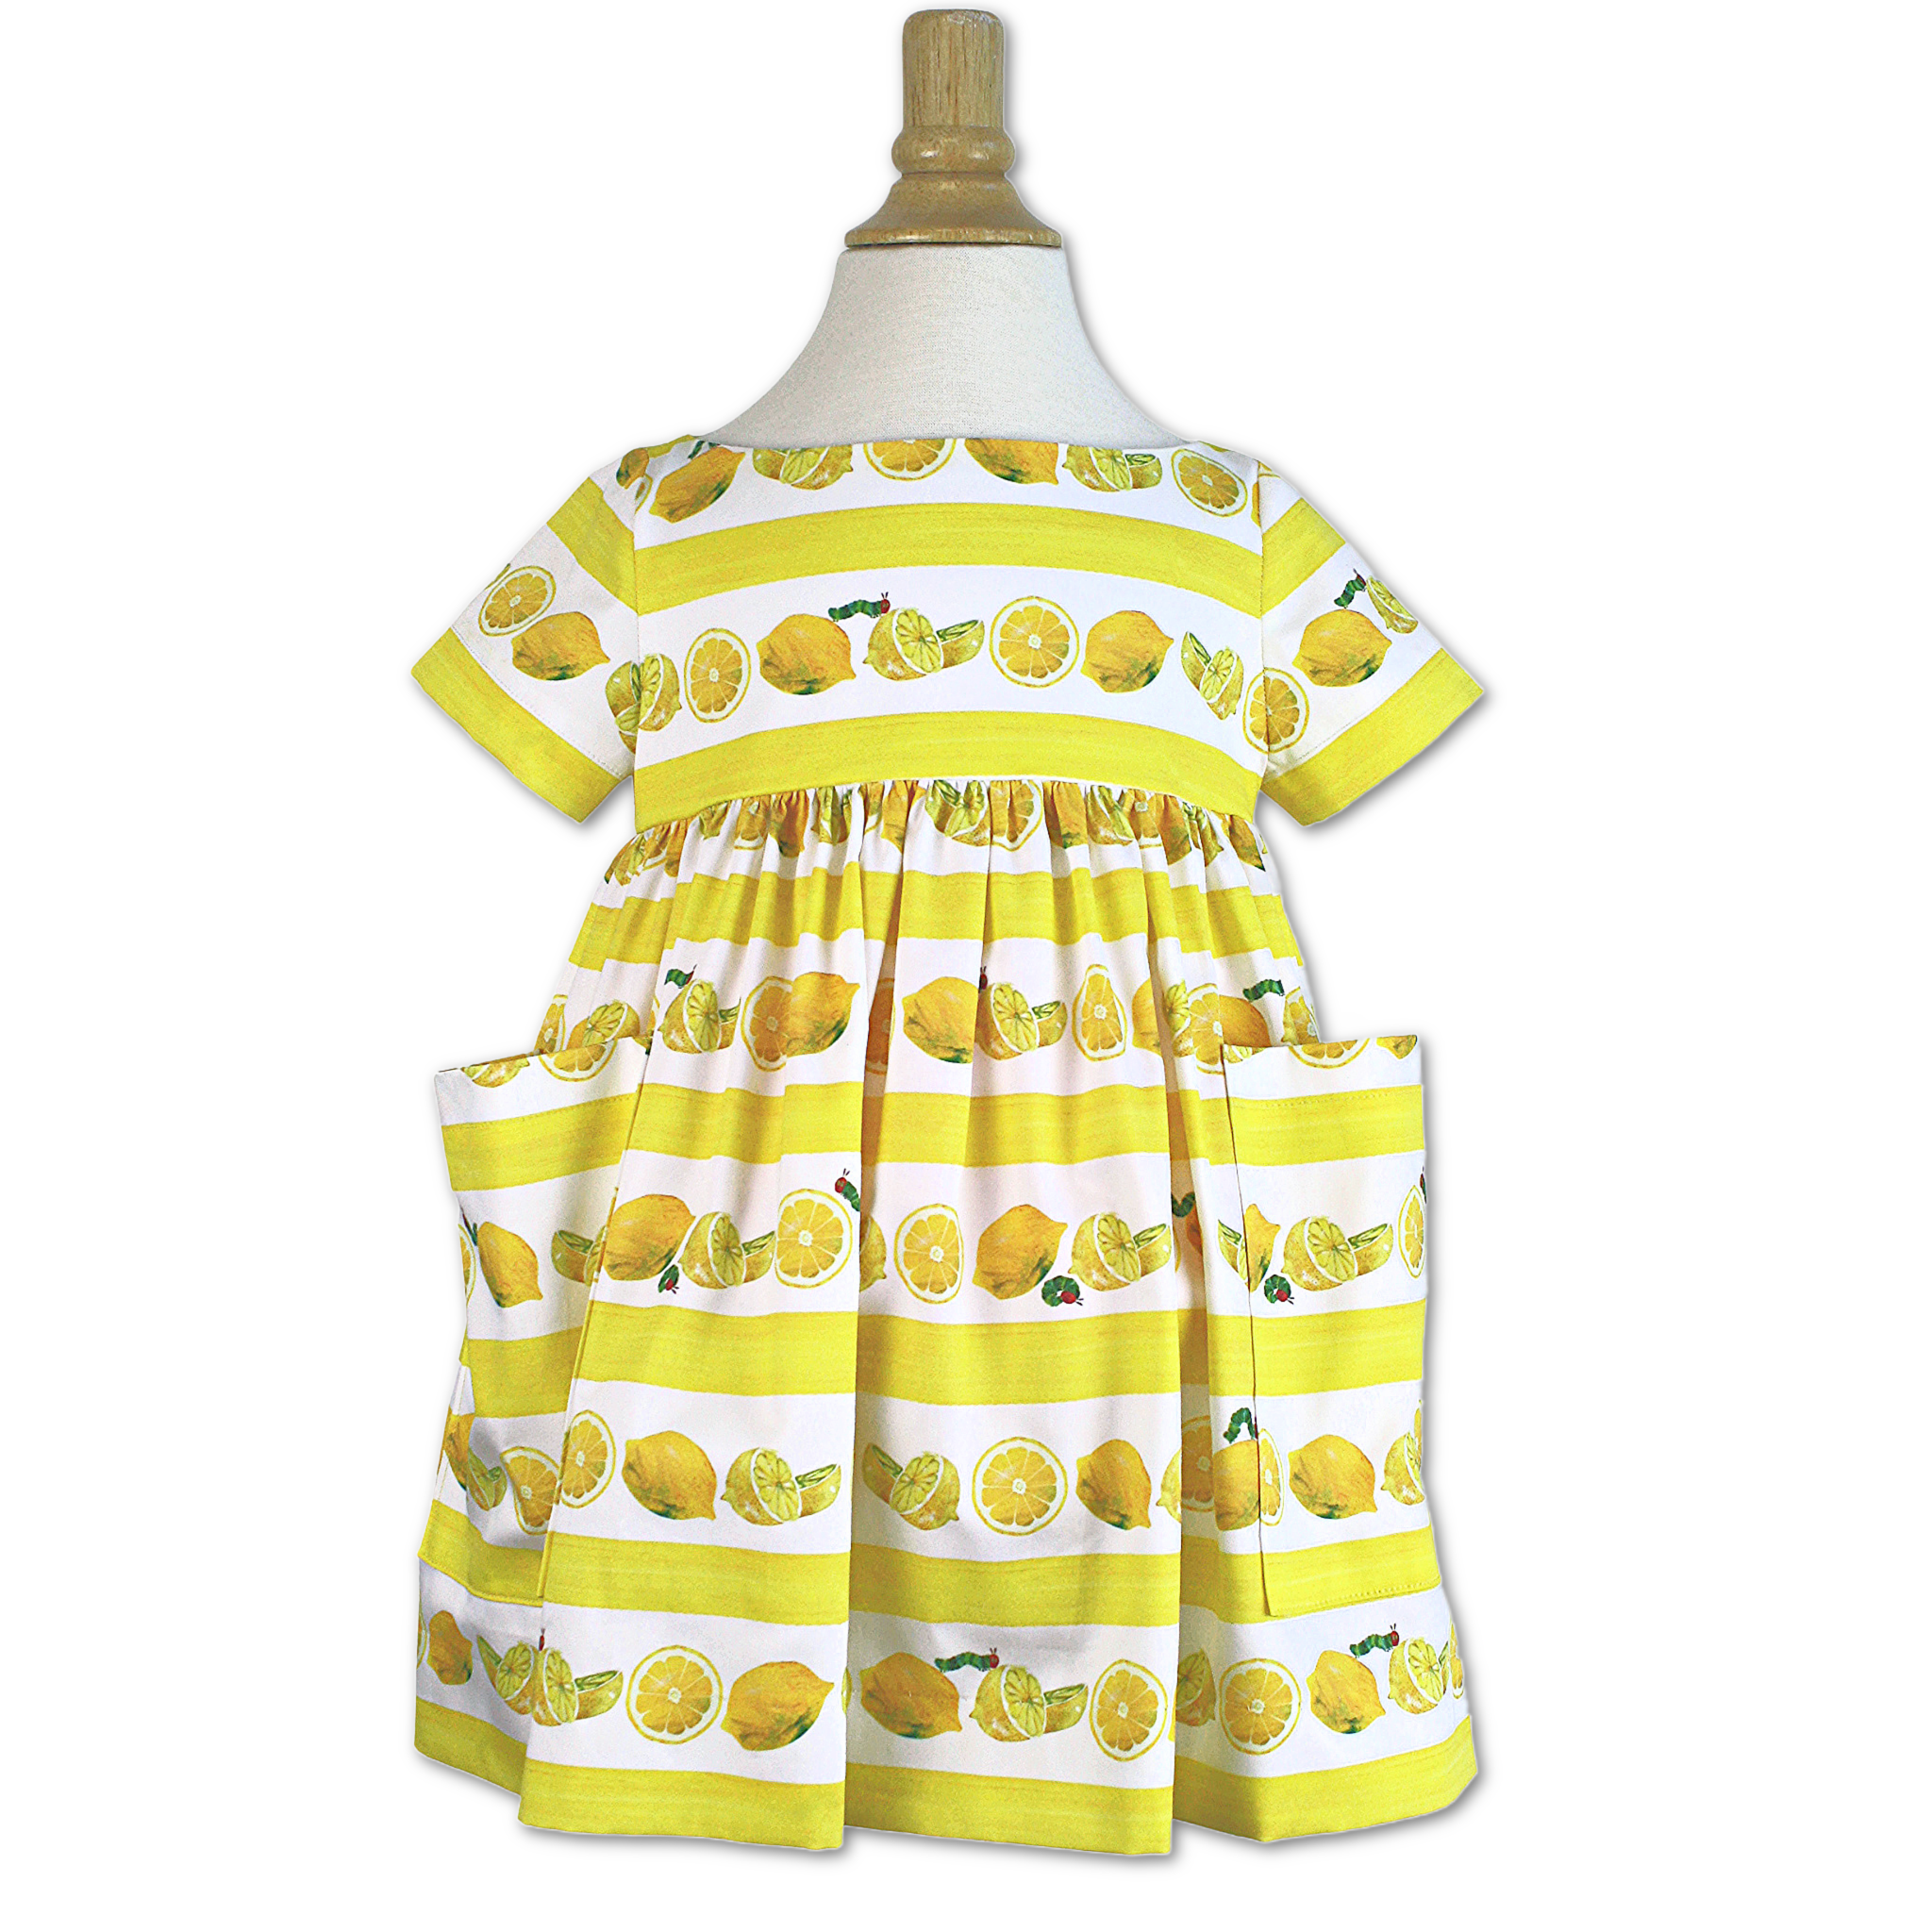 Little Goodall The Very Hungry Caterpillar Lemonade Dress 4T